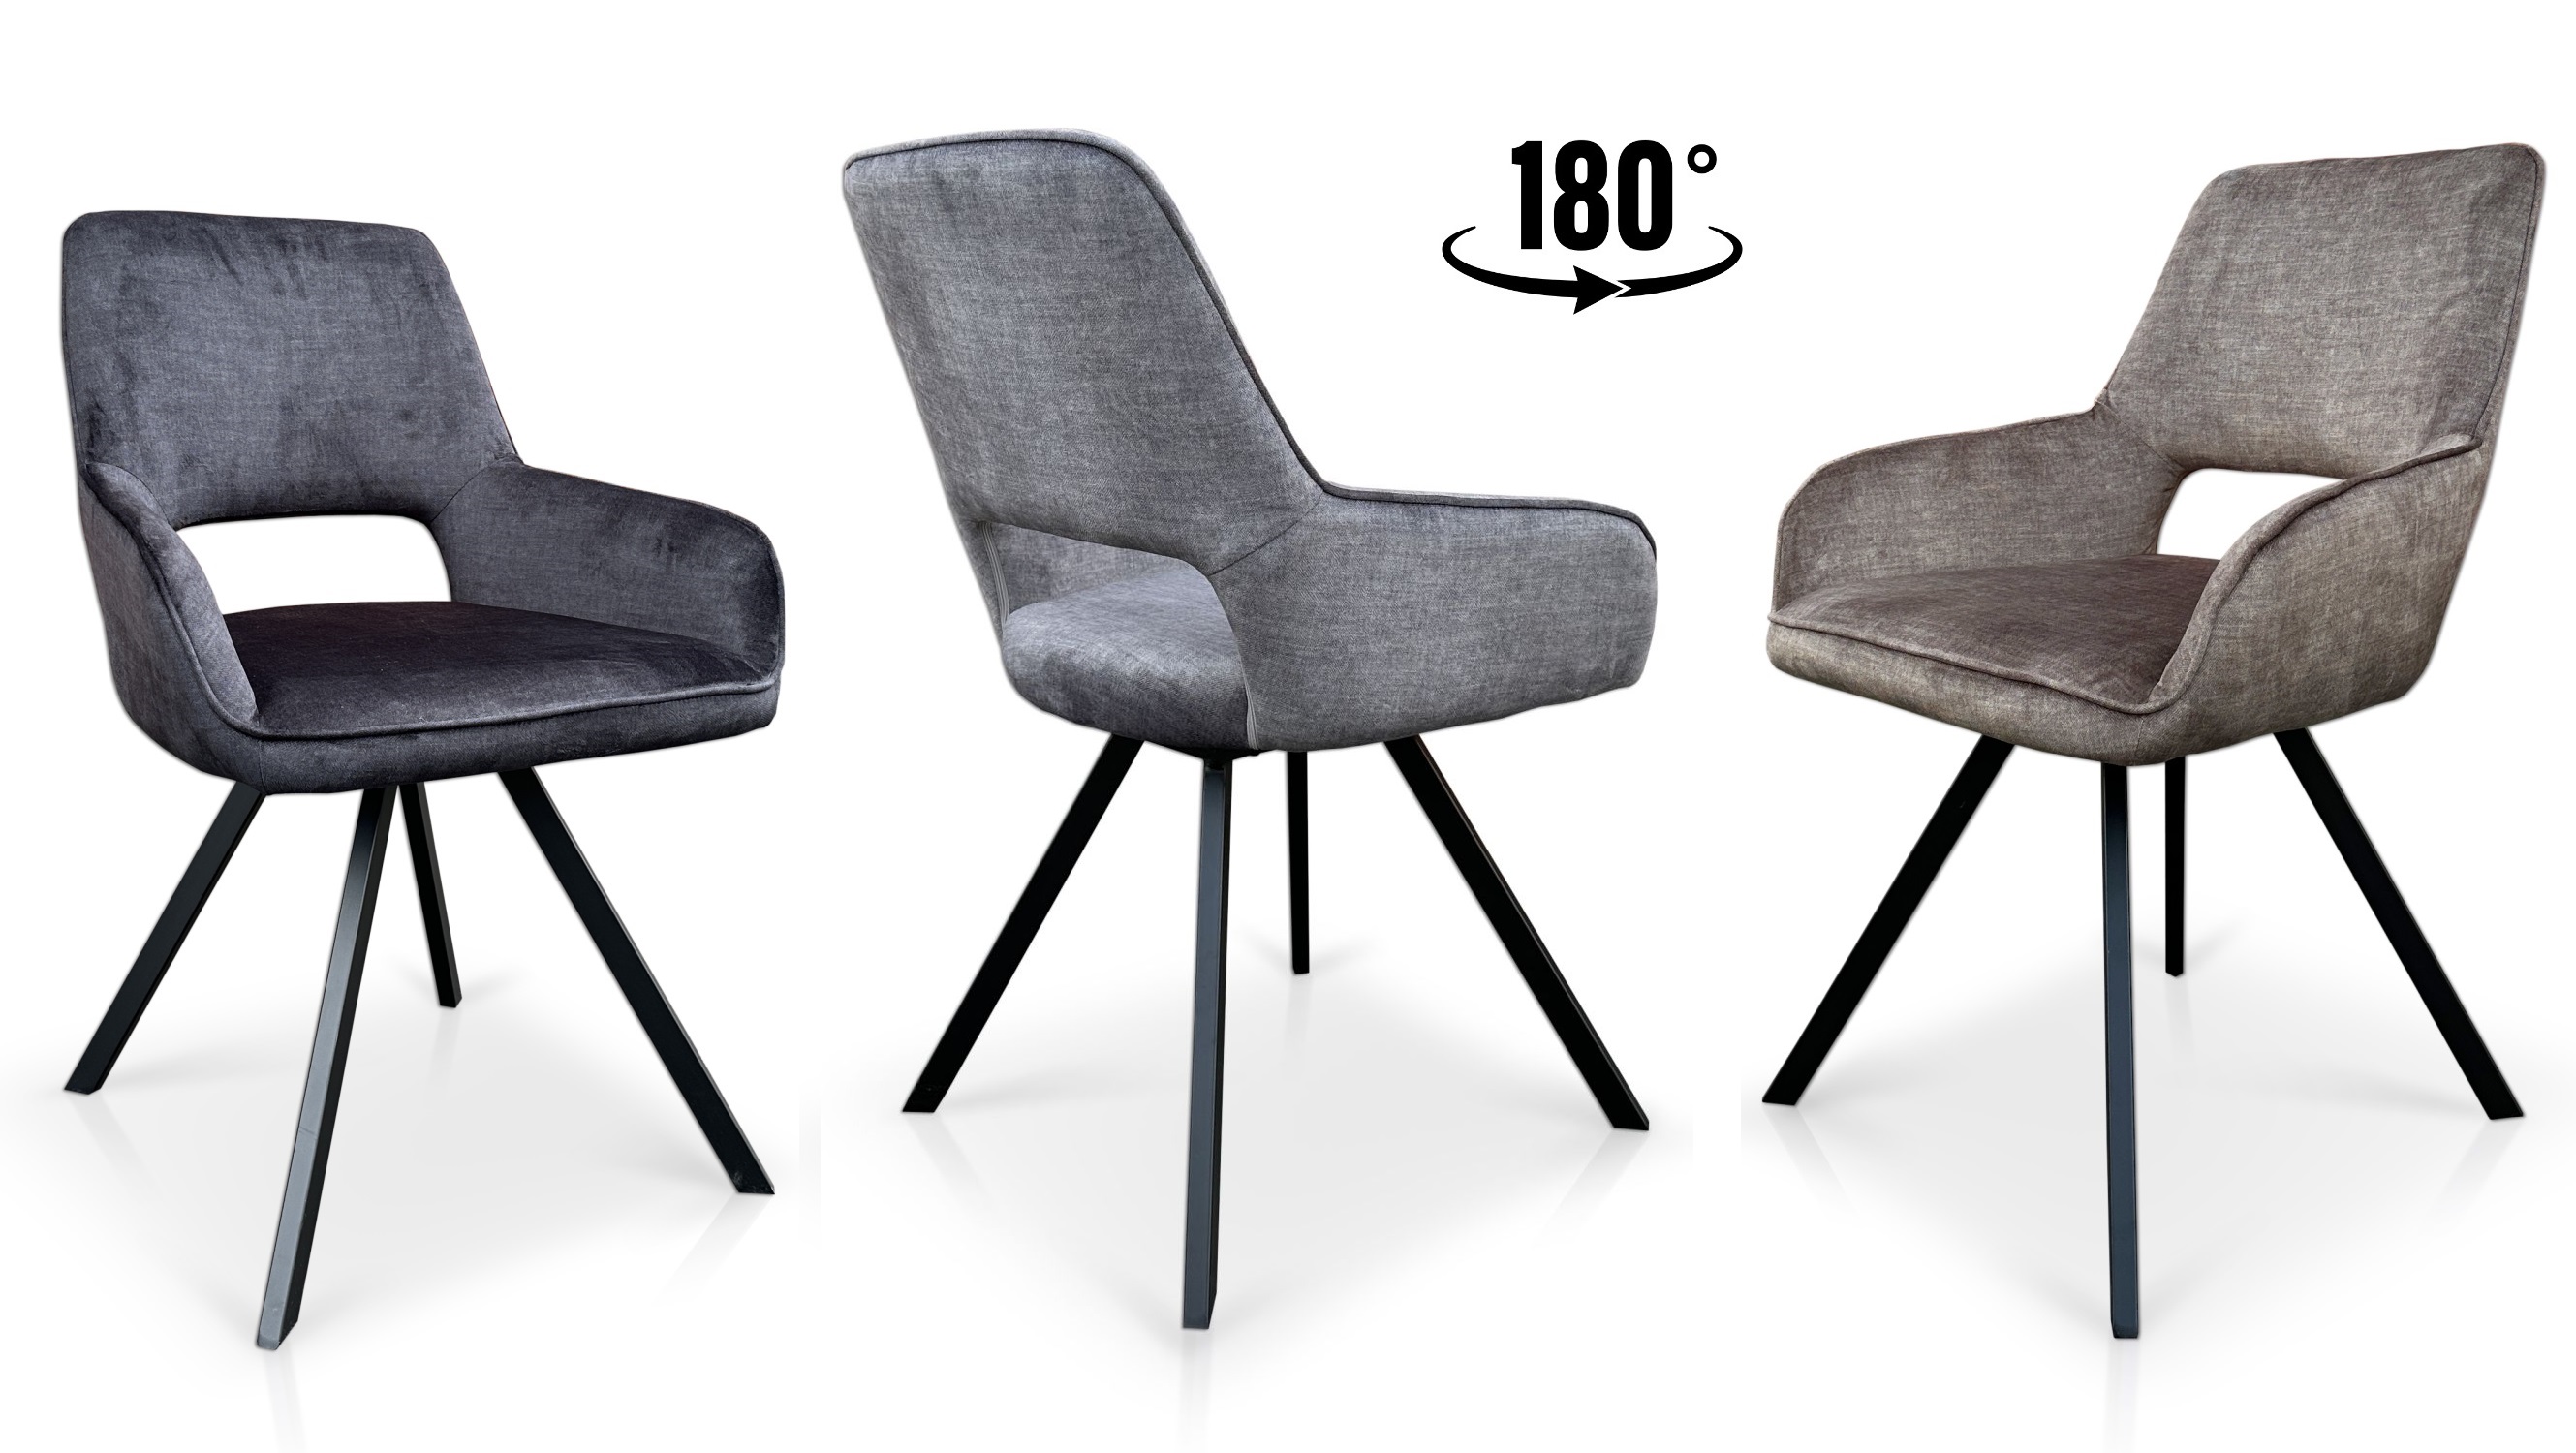 Krzesło obrotowe Portland z obrotowym siedziskiem 180° tkanina vogue 5